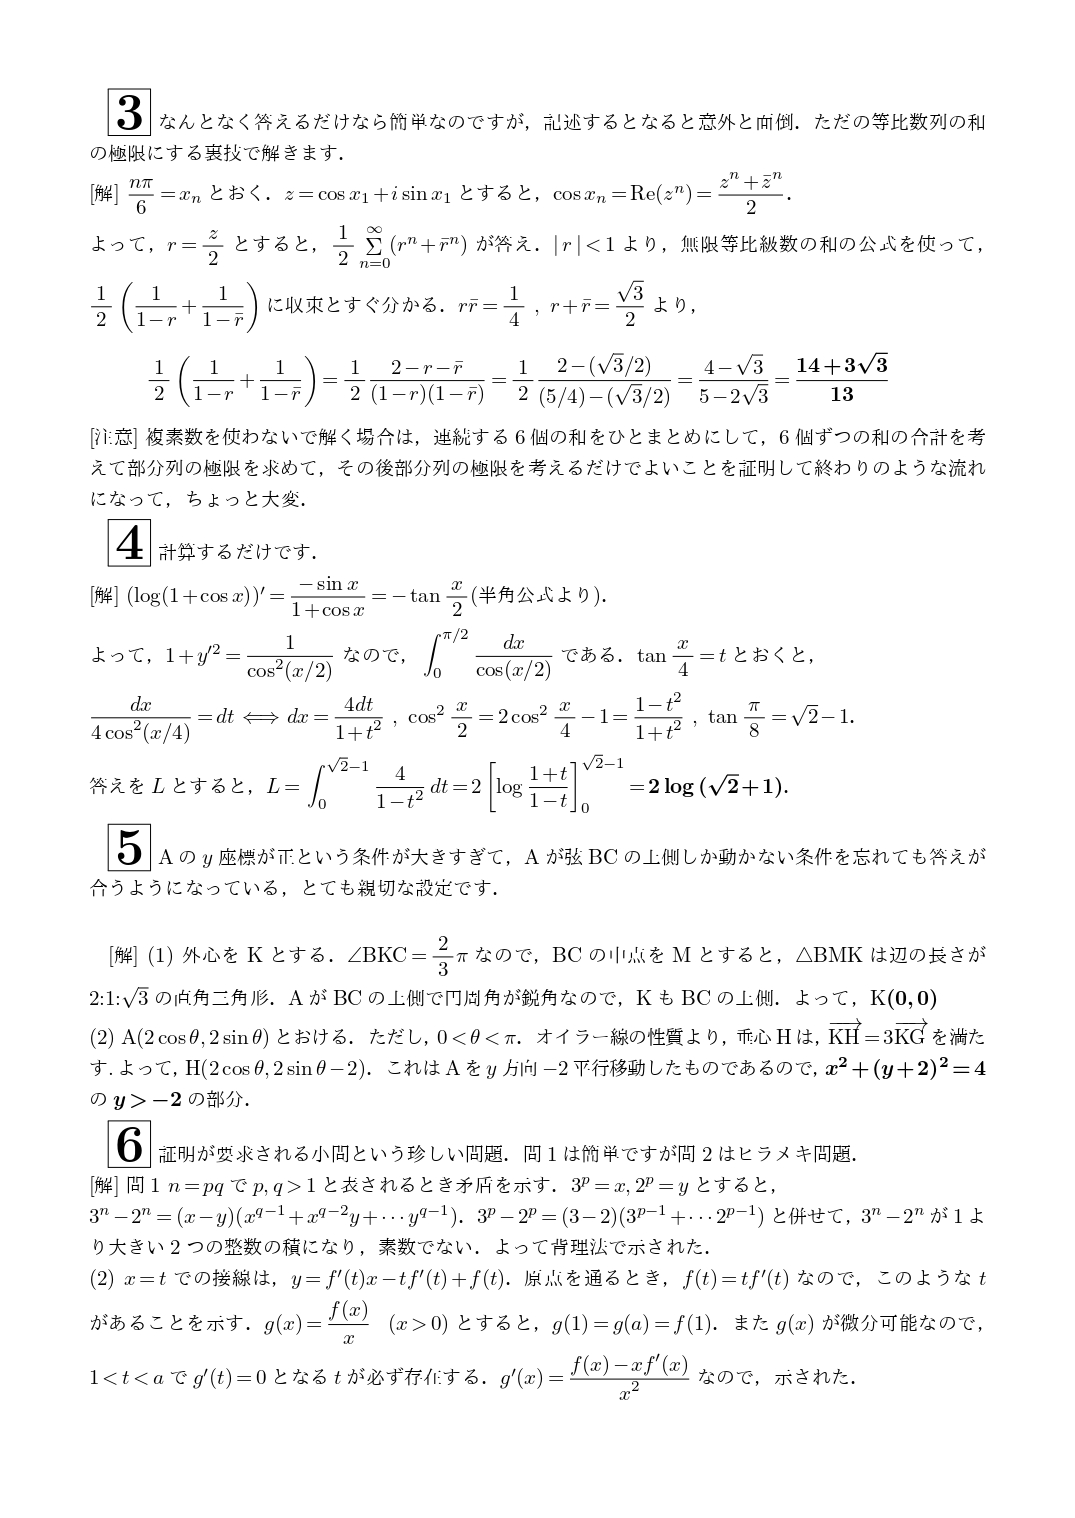 2021年2月25日 京都大学(理系)数学 解答速報